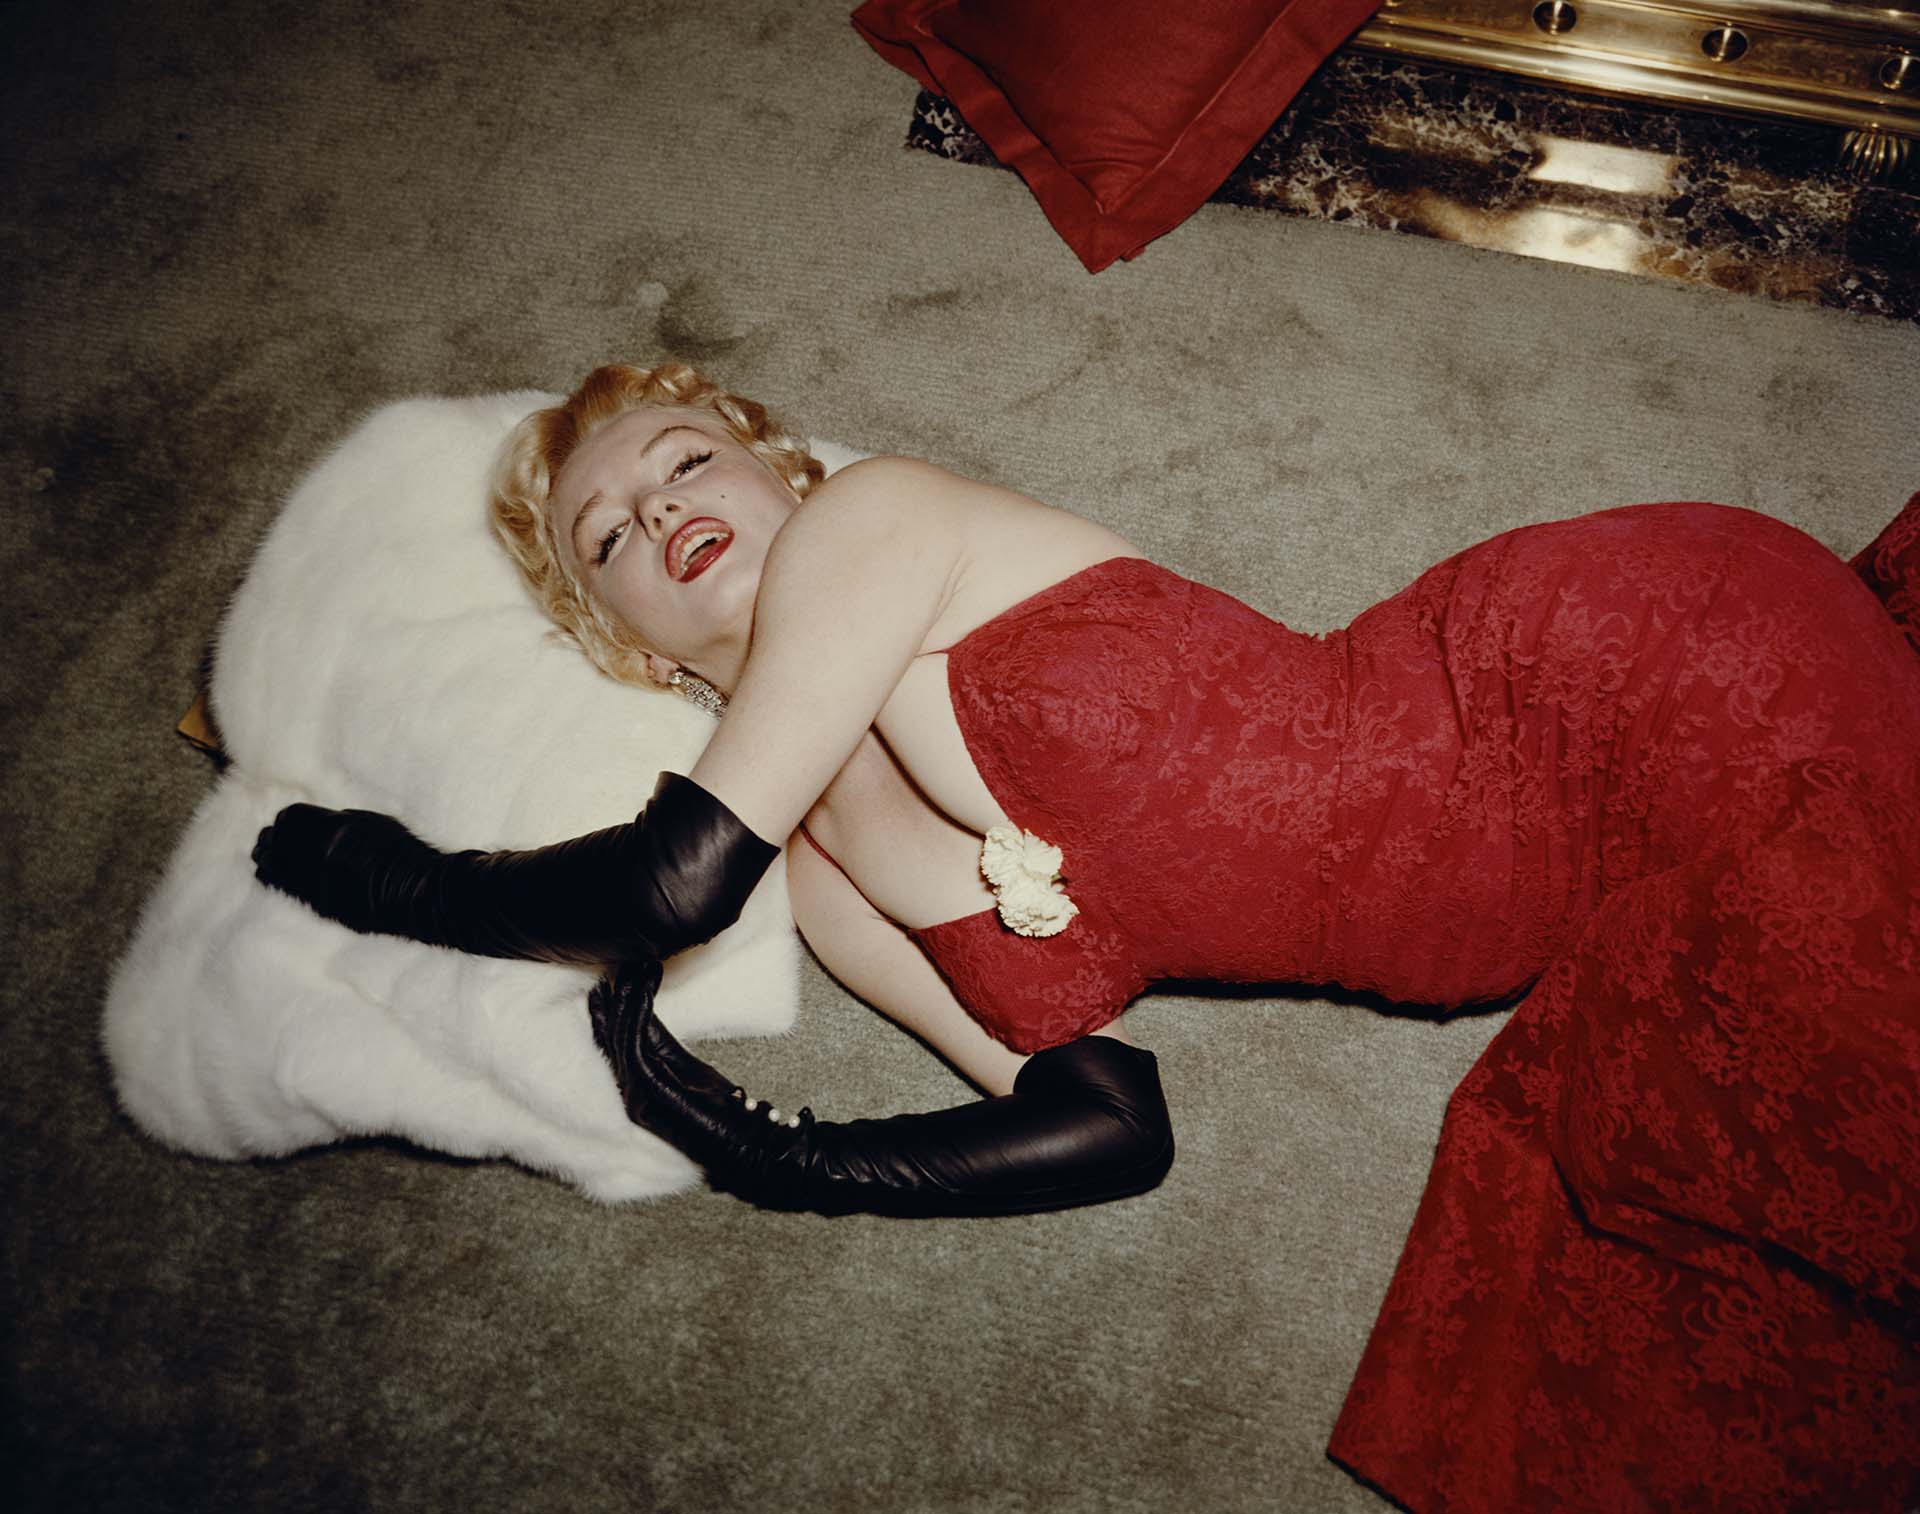 ¿Suicidio, sobredosis o asesinato?: las teorías sobre la muerte de Marilyn, desde los Kennedy hasta los ovnis